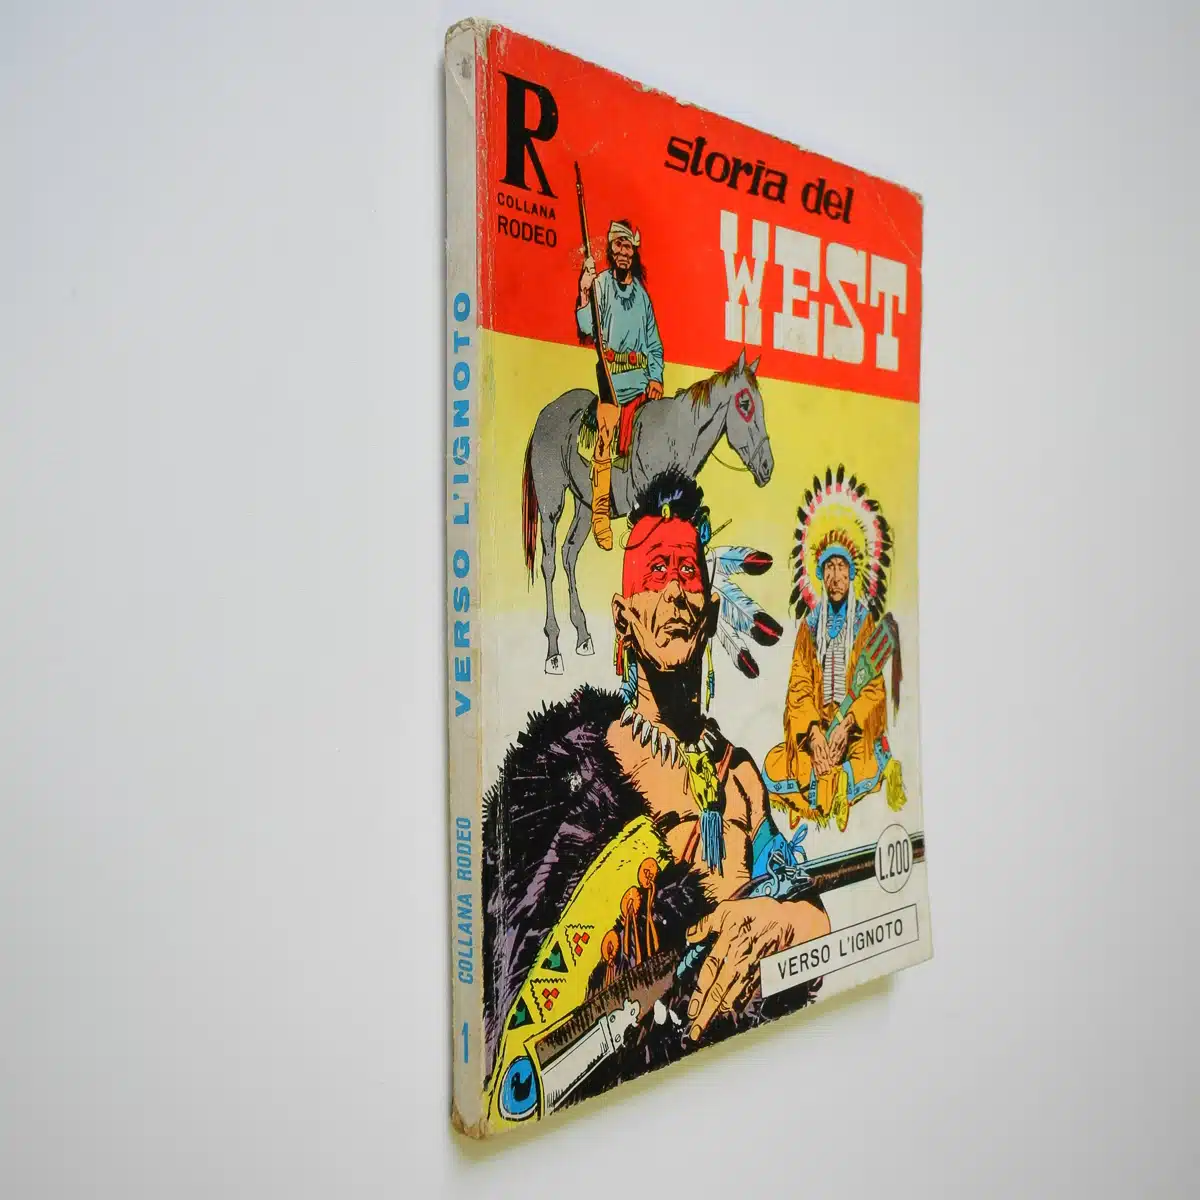 Collana Rodeo 1 Storia del West con poster Tex originale edizioni Araldo del 1967 Verso l’ignoto